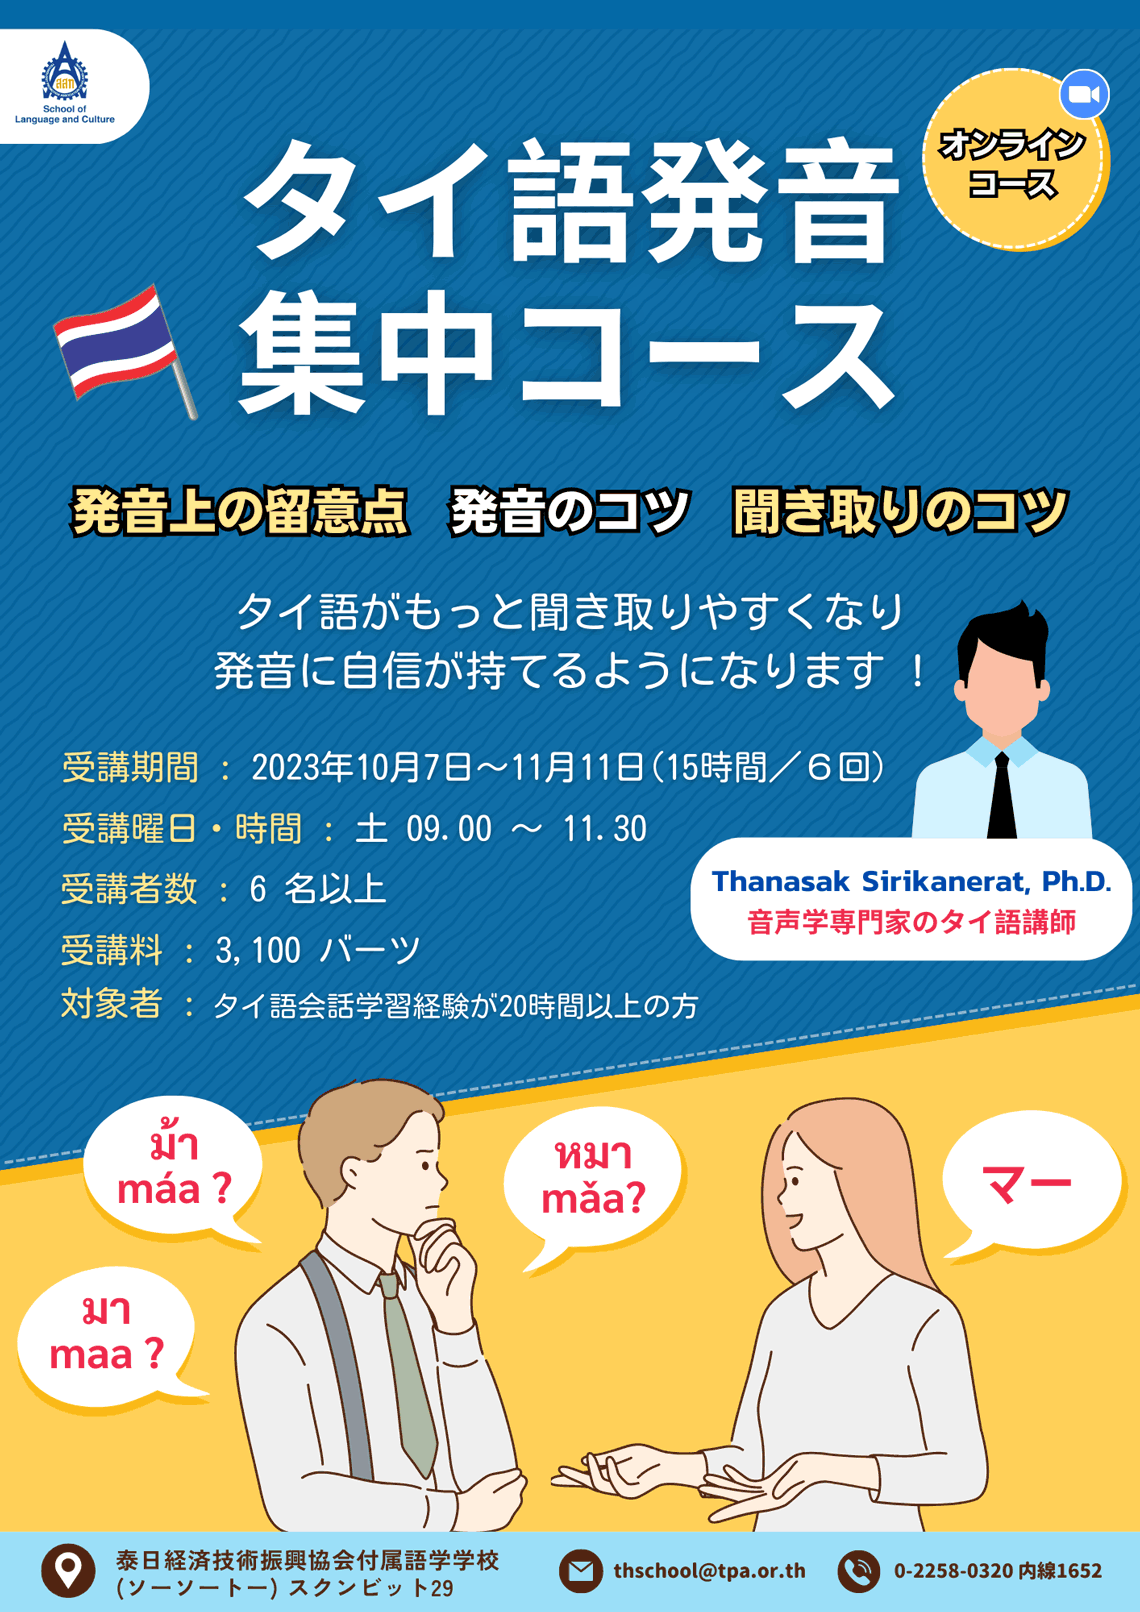 タイ語発音集中コース